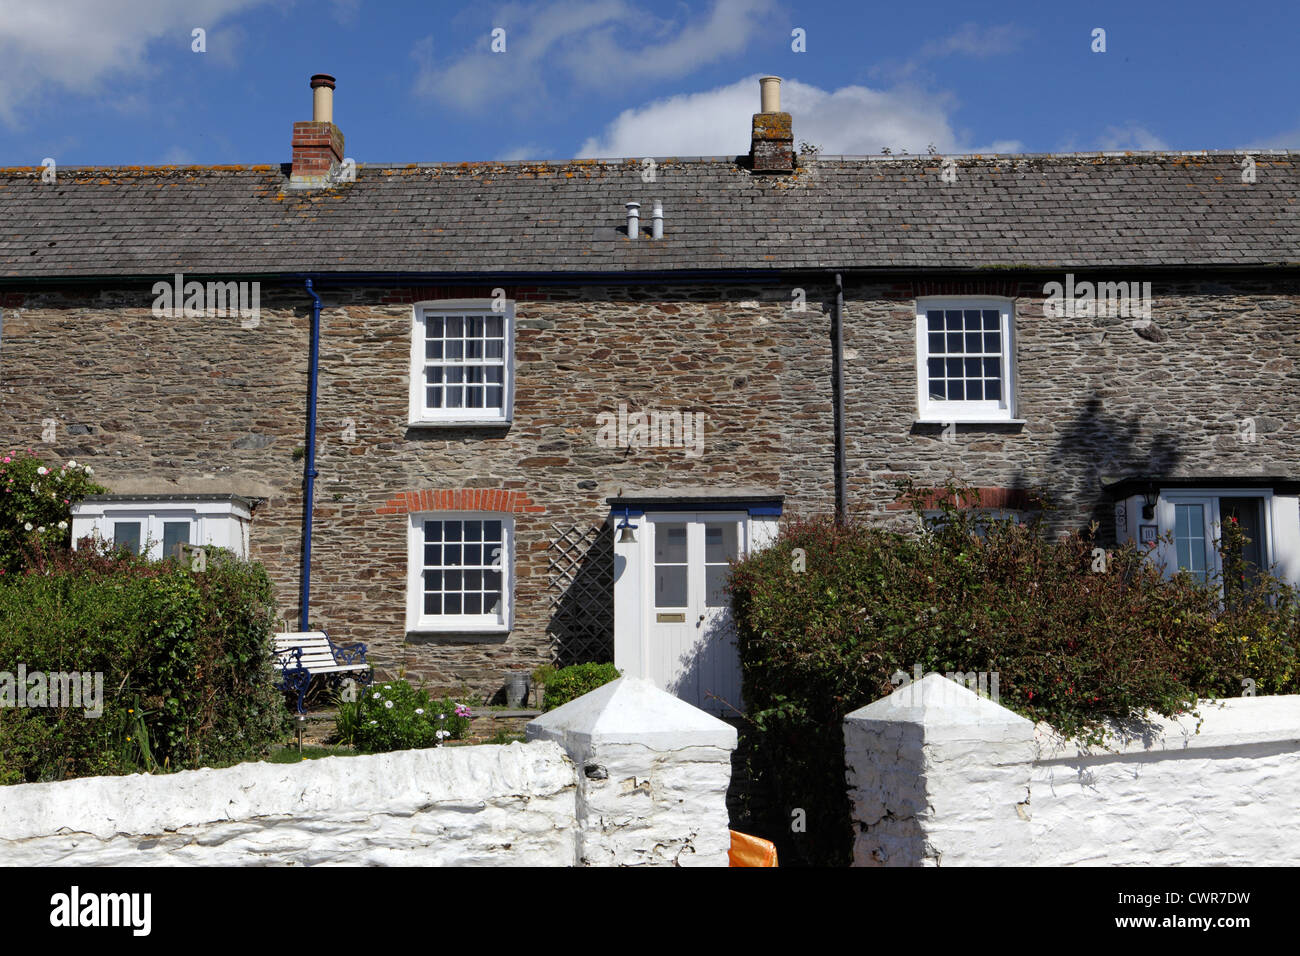 L'extérieur du parc de logements au Royaume-Uni ciel bleu ensoleillé, fisherman's cottages en pierre mitoyenne, St Mawes, Cornwall, UK Banque D'Images